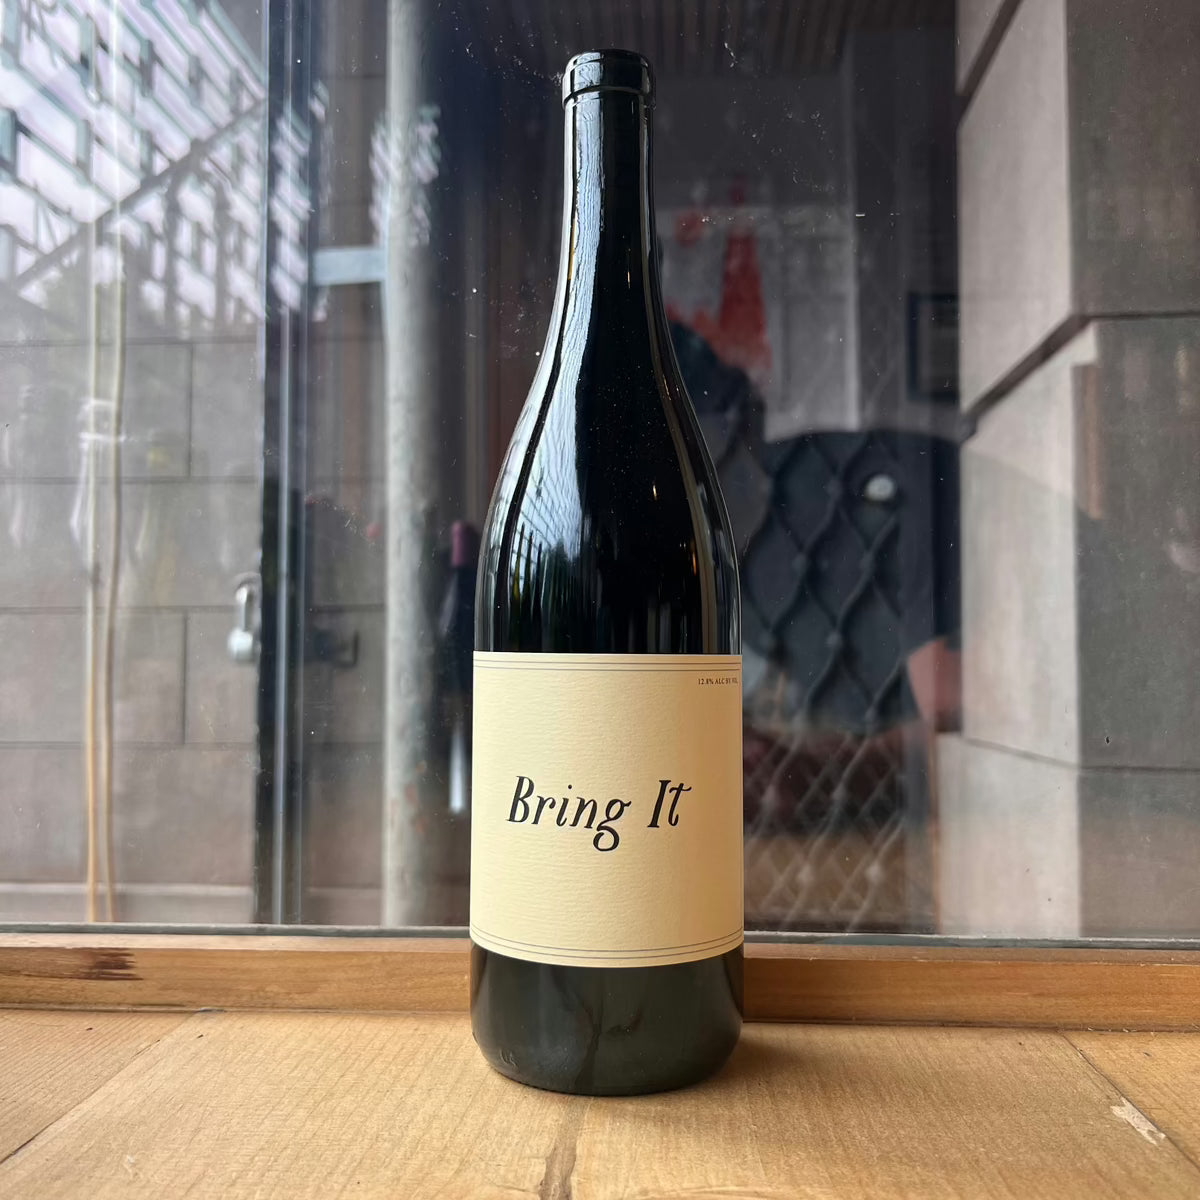 Swick Wines, "Bring It" 2021